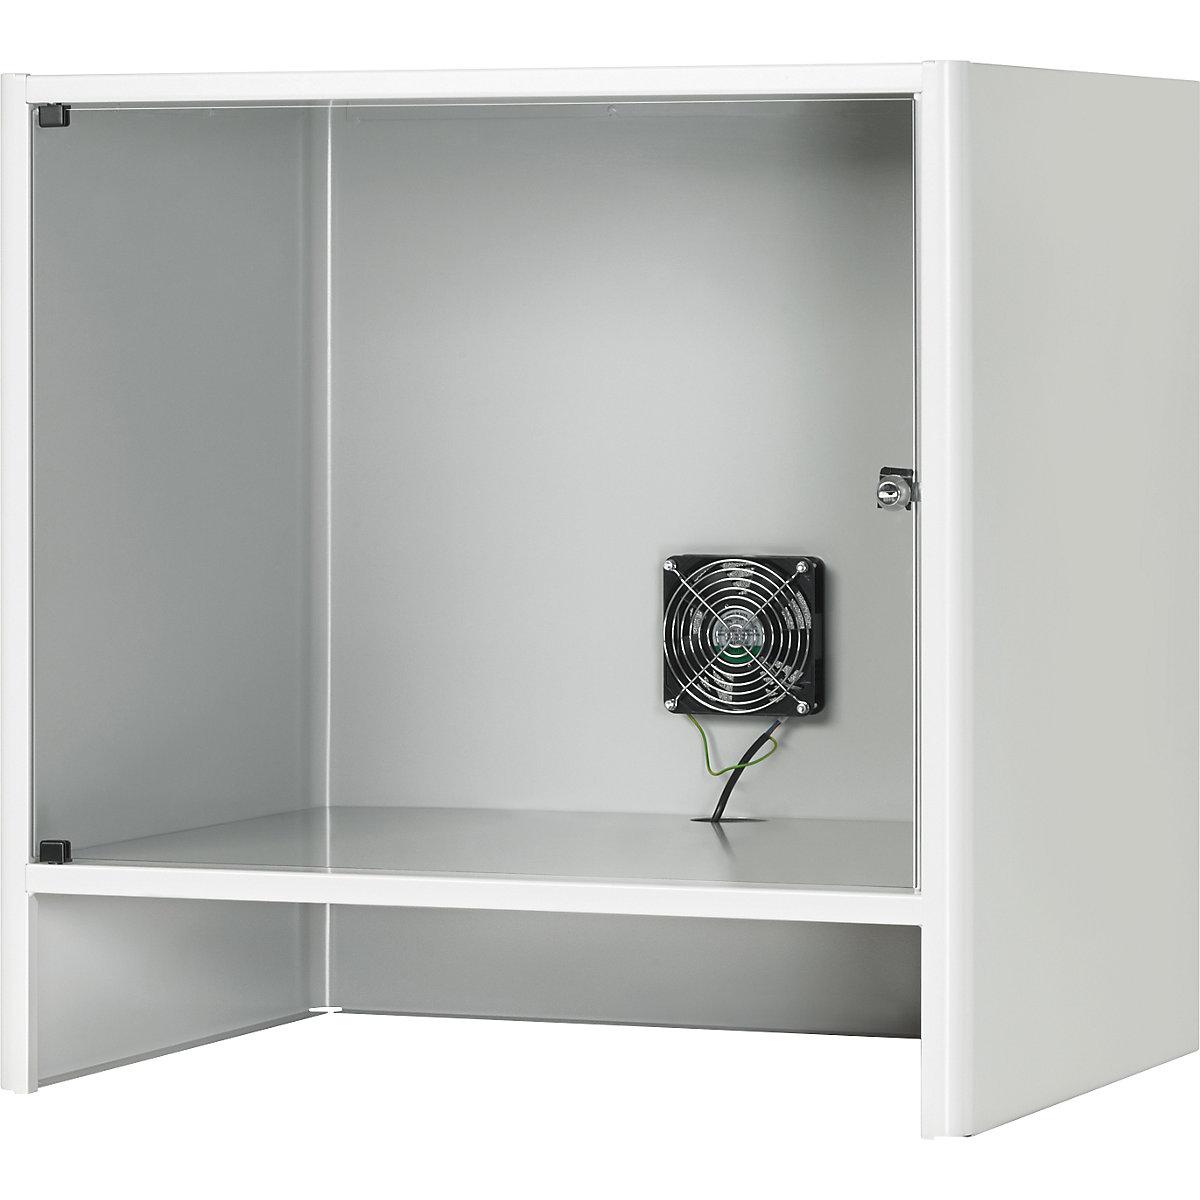 Monitorkast met geïntegreerde ventilator – RAU, h x b x d = 710 x 720 x 550 mm, lichtgrijs RAL 7035-3